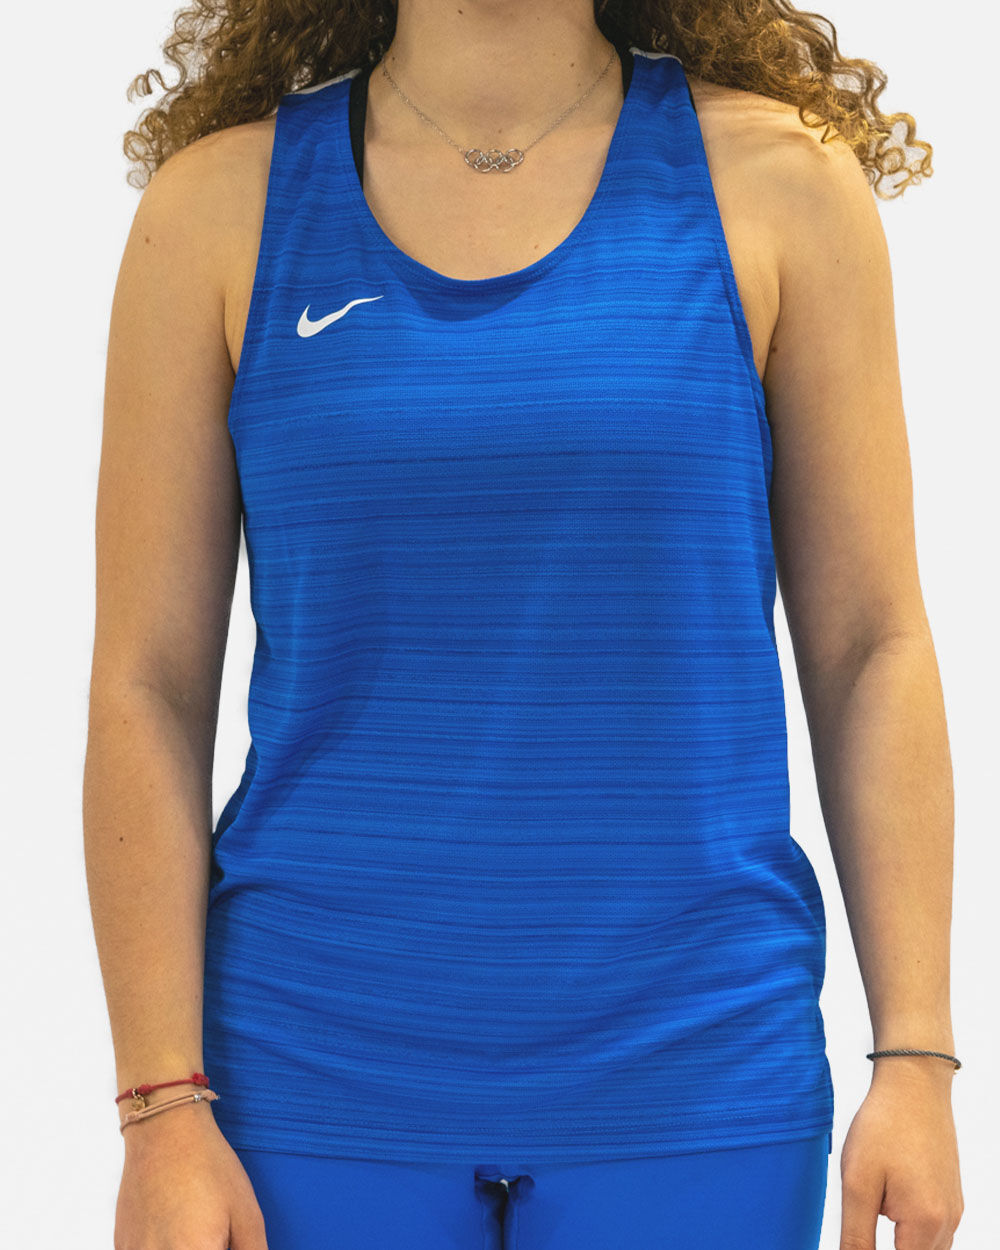 Camiseta sin mangas de running Nike Stock Azul Real para Mujeres - NT0301-463